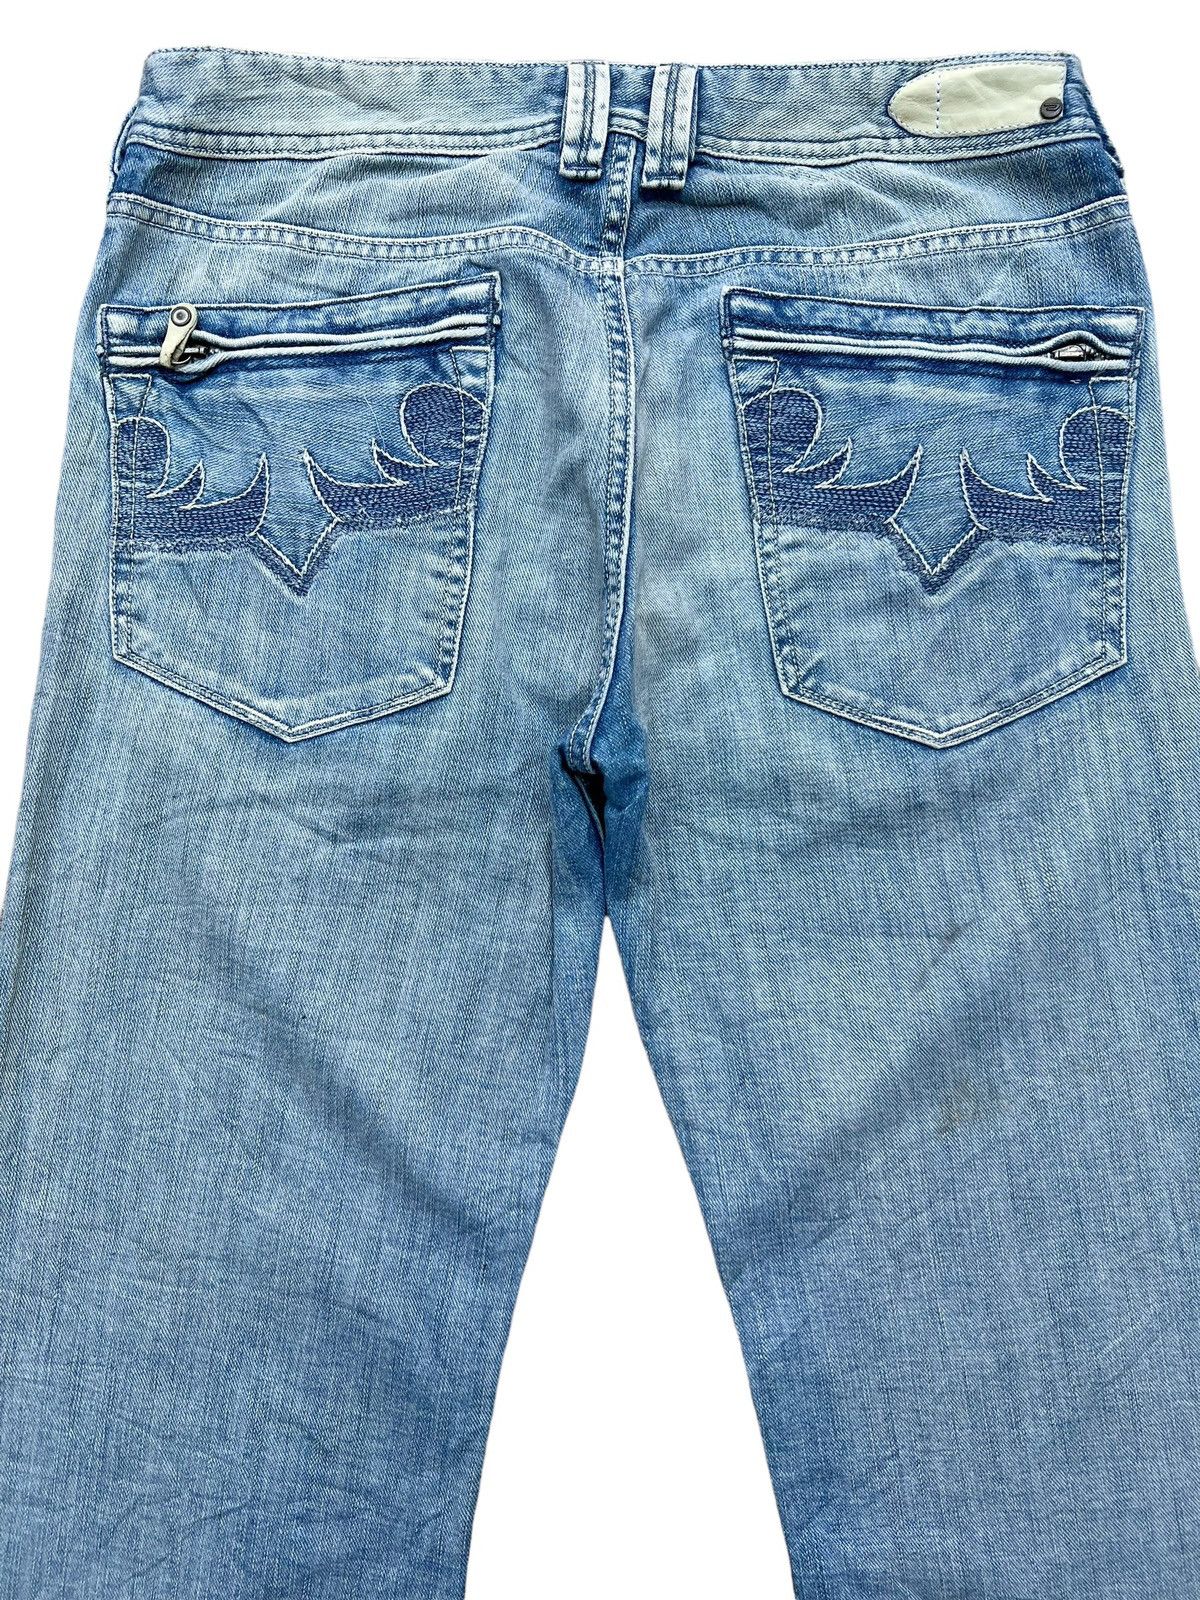 Vintage Distressed Diesel Industry Wide Jeans 32x30 - 5